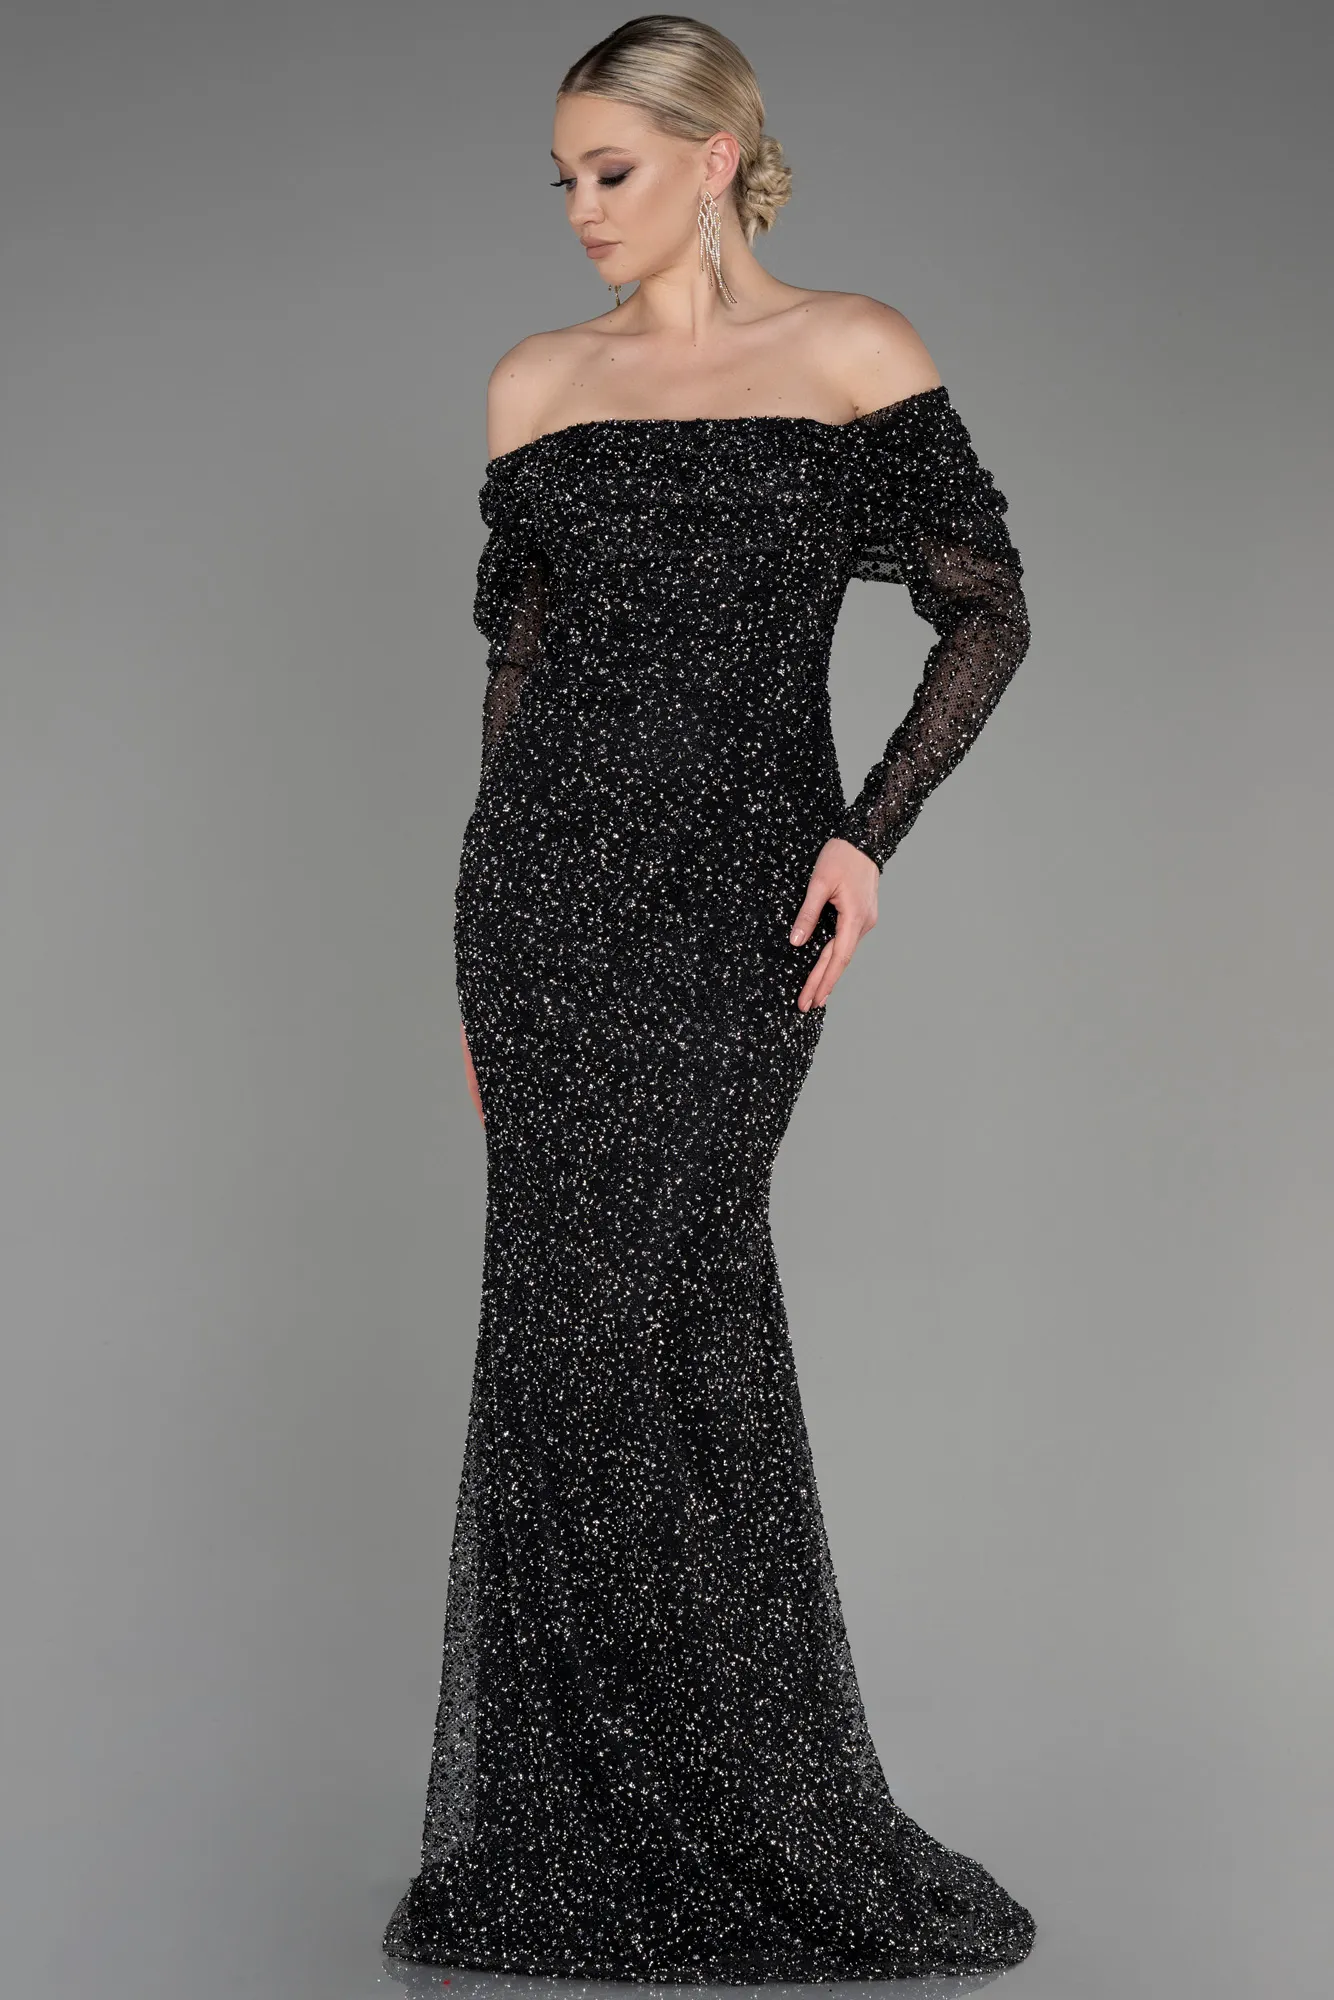 Black-Long Mermaid Prom Dress ABU3756